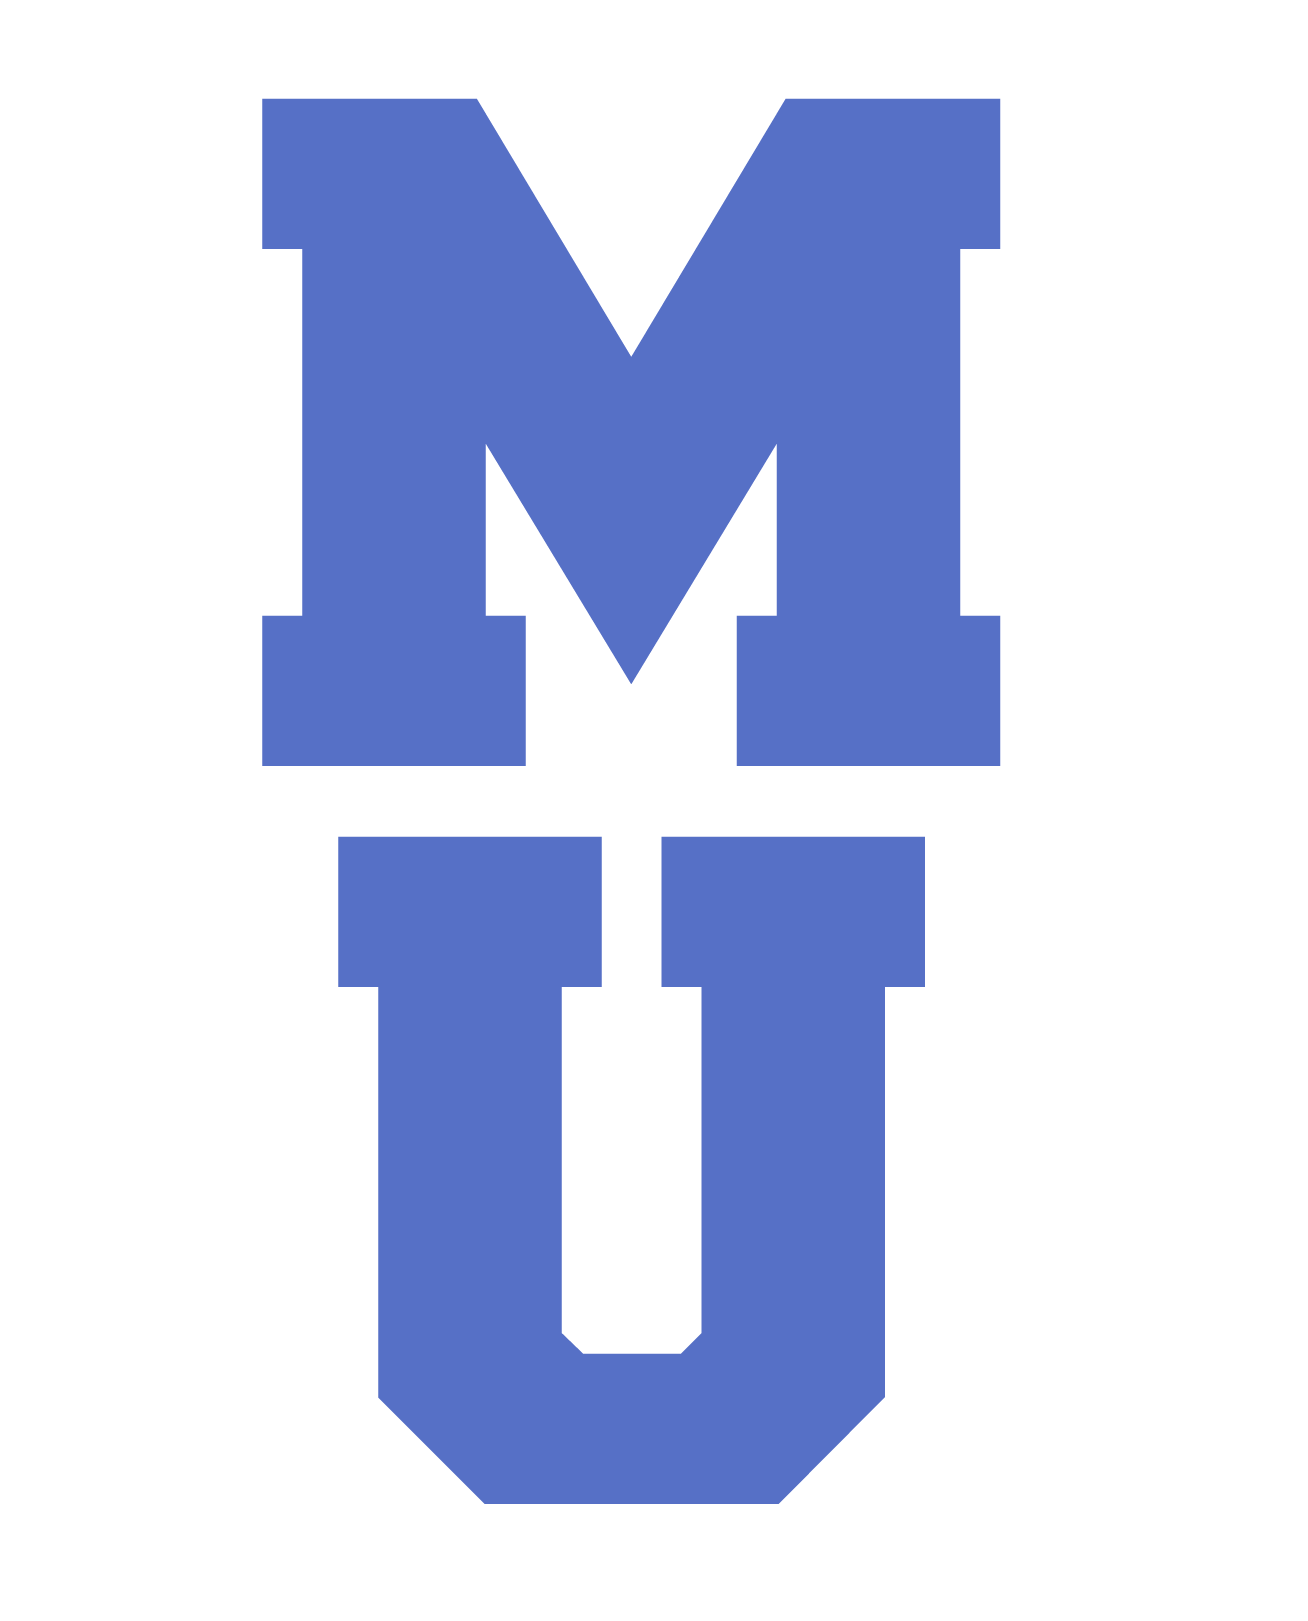 MU Logo - File:MU Logo 1.png - Wikimedia Commons